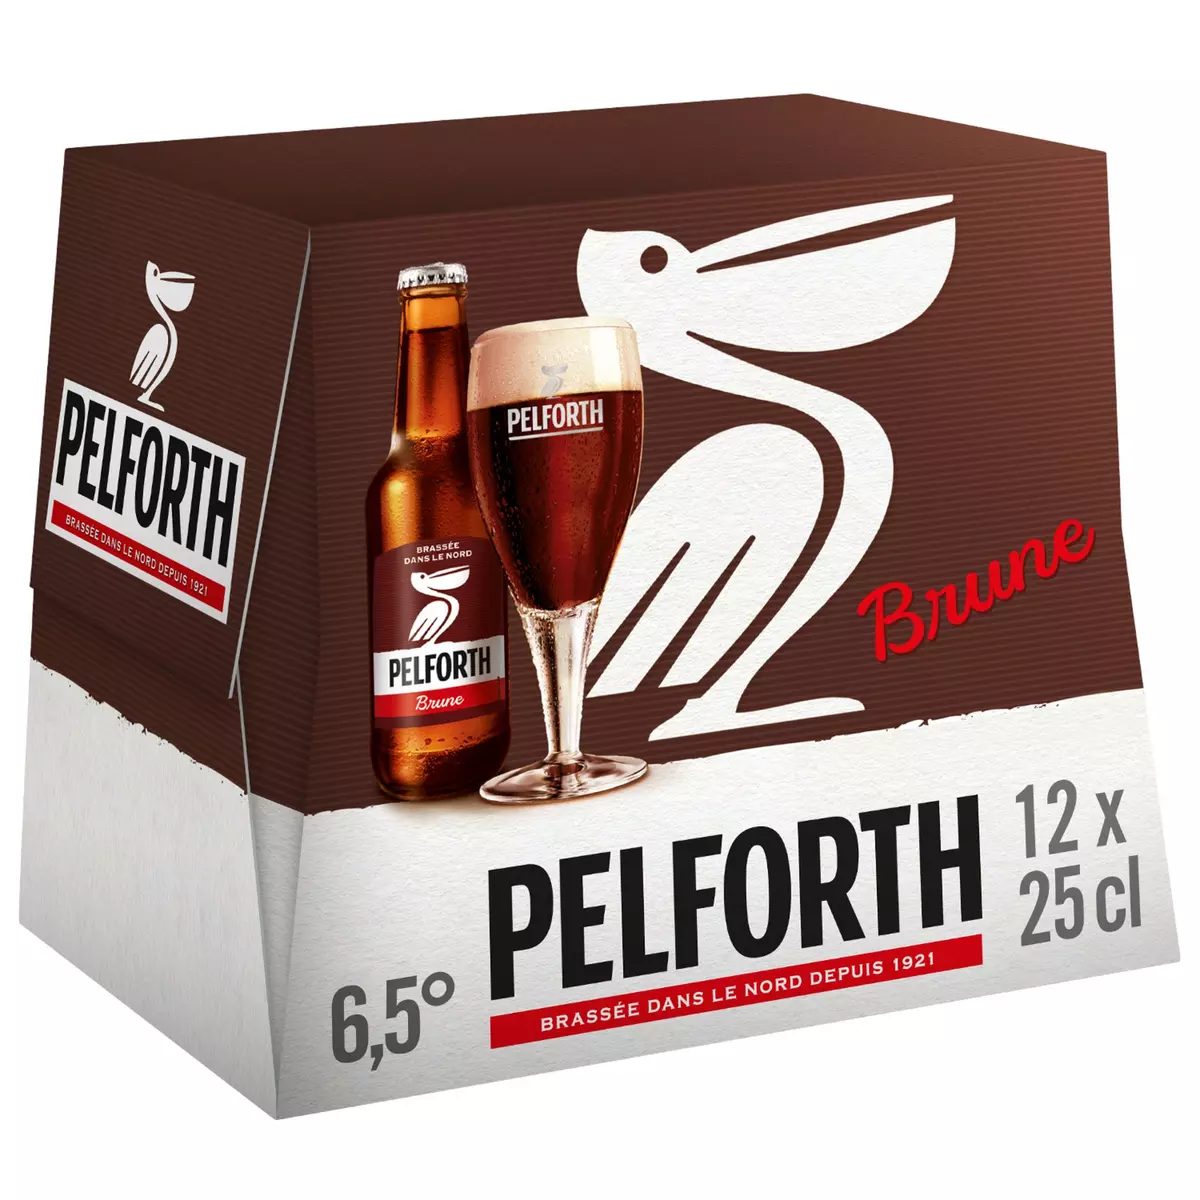 PELFORTH Bière brune du Nord 6,5% bouteilles 12x25cl